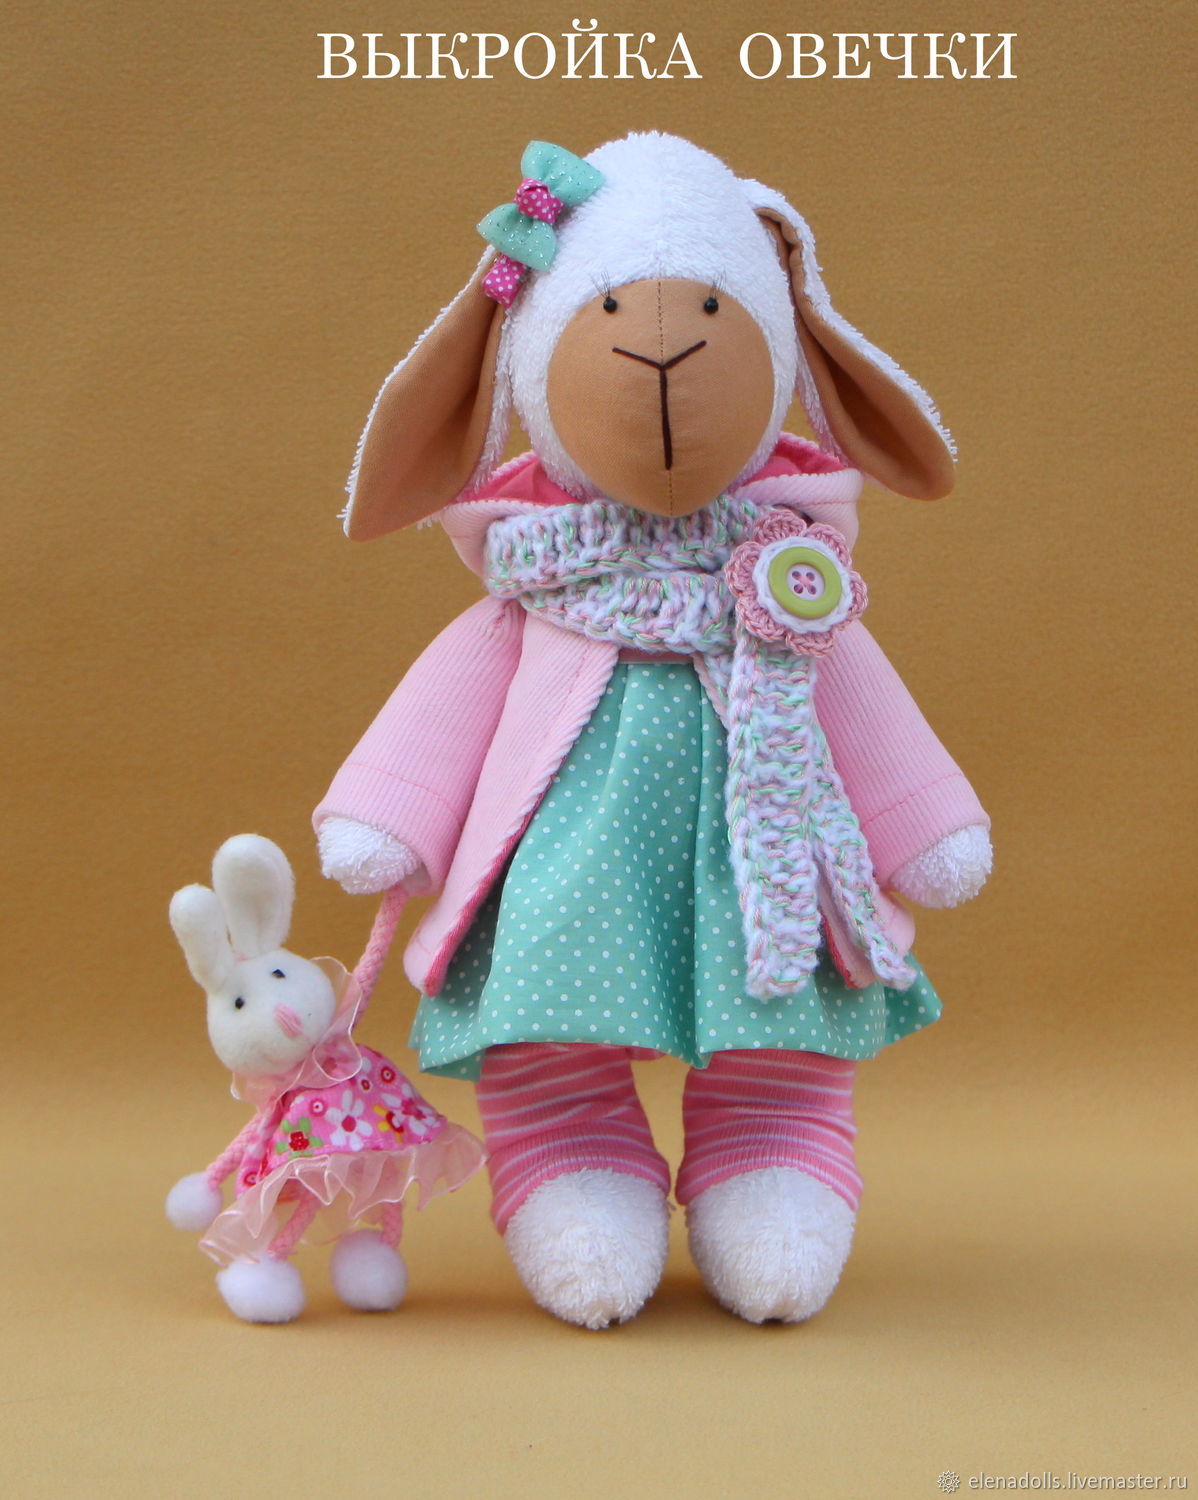 Кукла Тильда: выкройки в натуральную величину и пошив зайца, ангела, одежды для игрушек